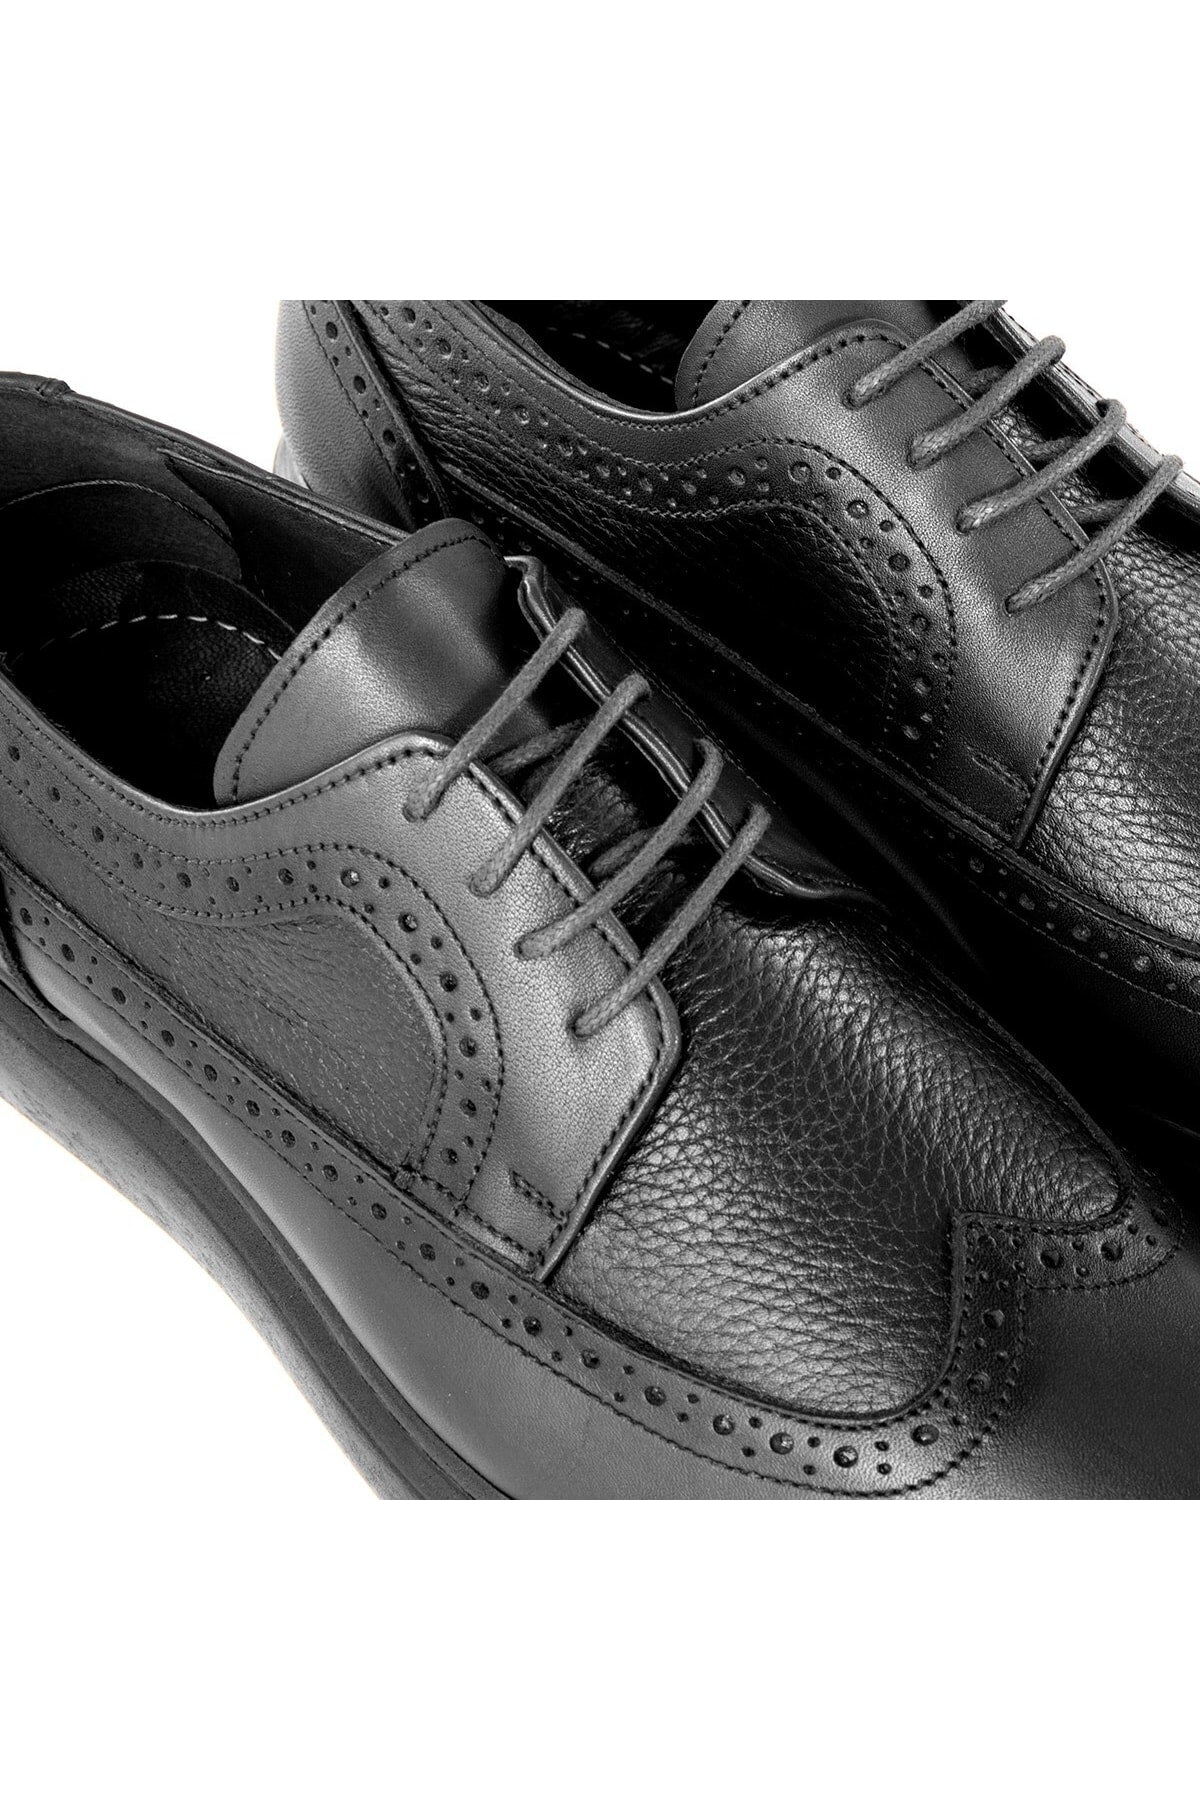  Мужские повседневные классические туфли из натуральной кожи Lusso, классические туфли из натуральной кожи, классические дерби